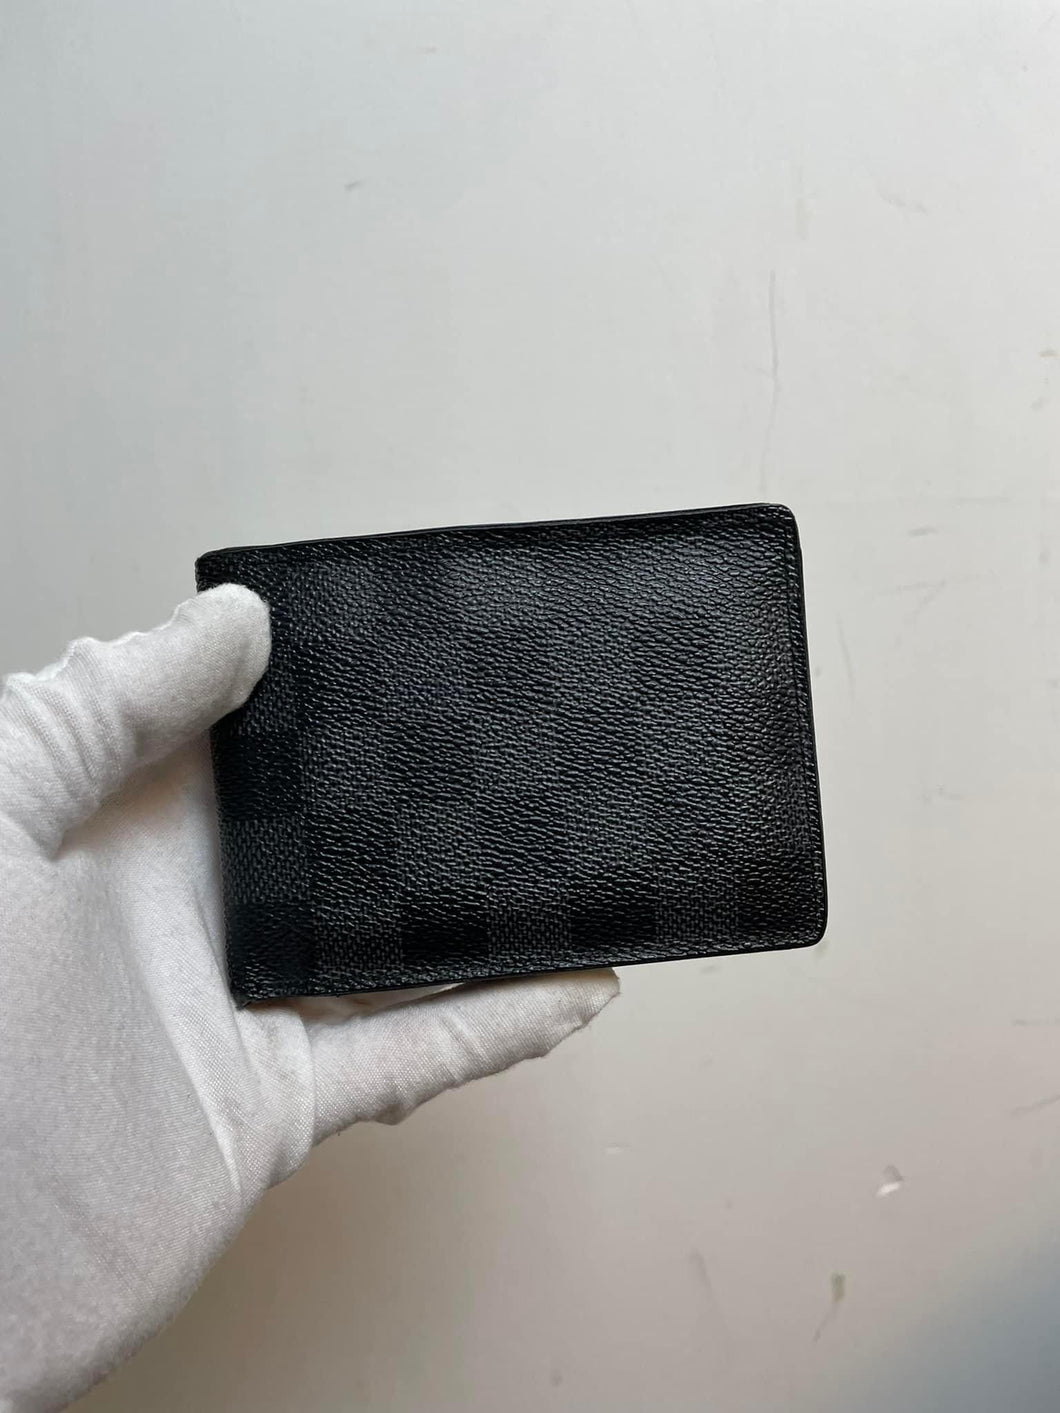 Louis Vuitton damier graphite multiples wallet